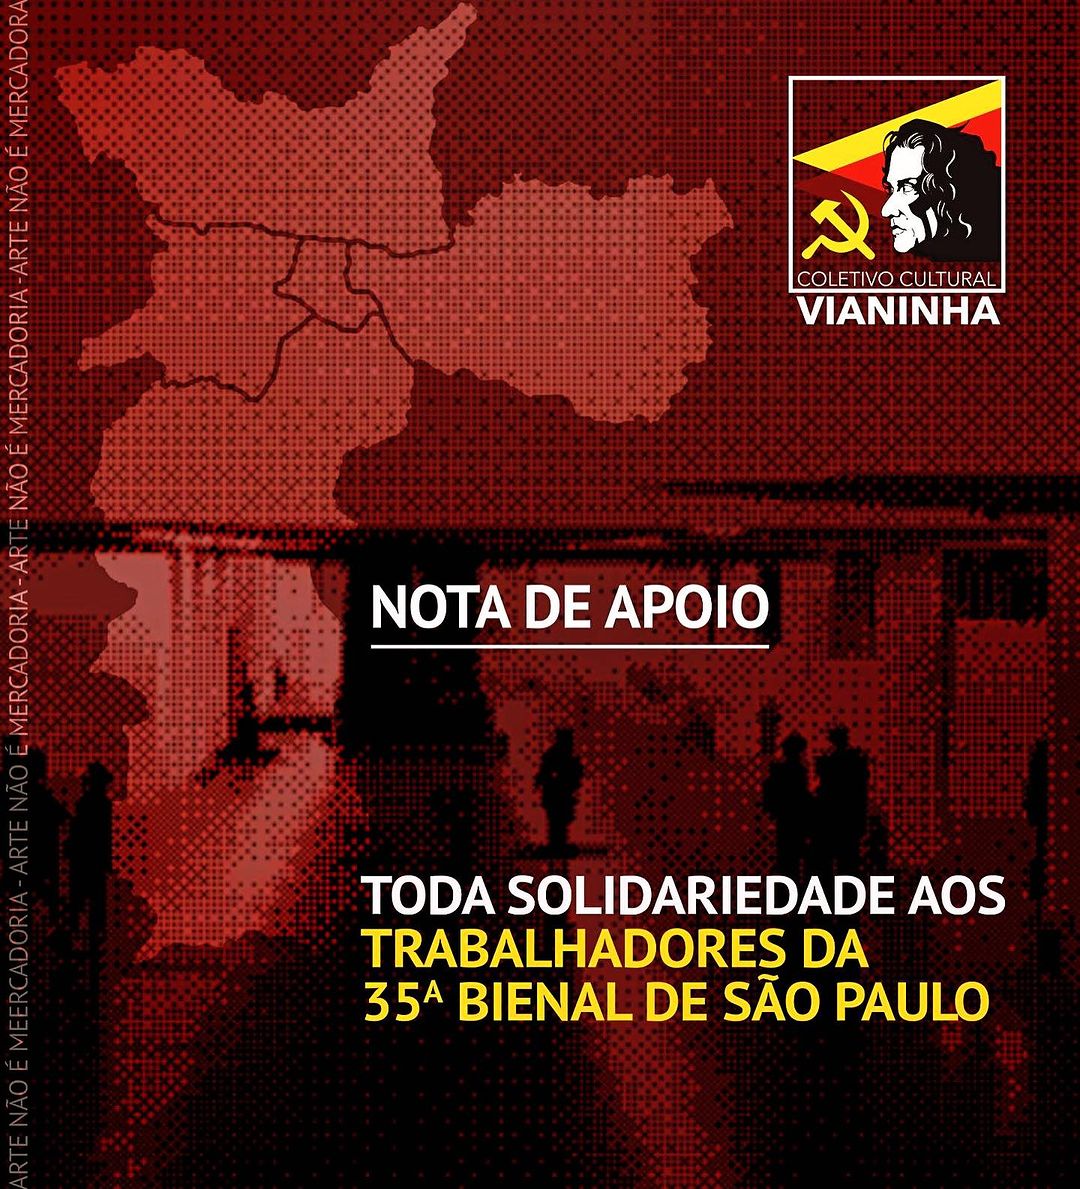 Toda solidariedade aos trabalhadores da 35ª Bienal de São Paulo